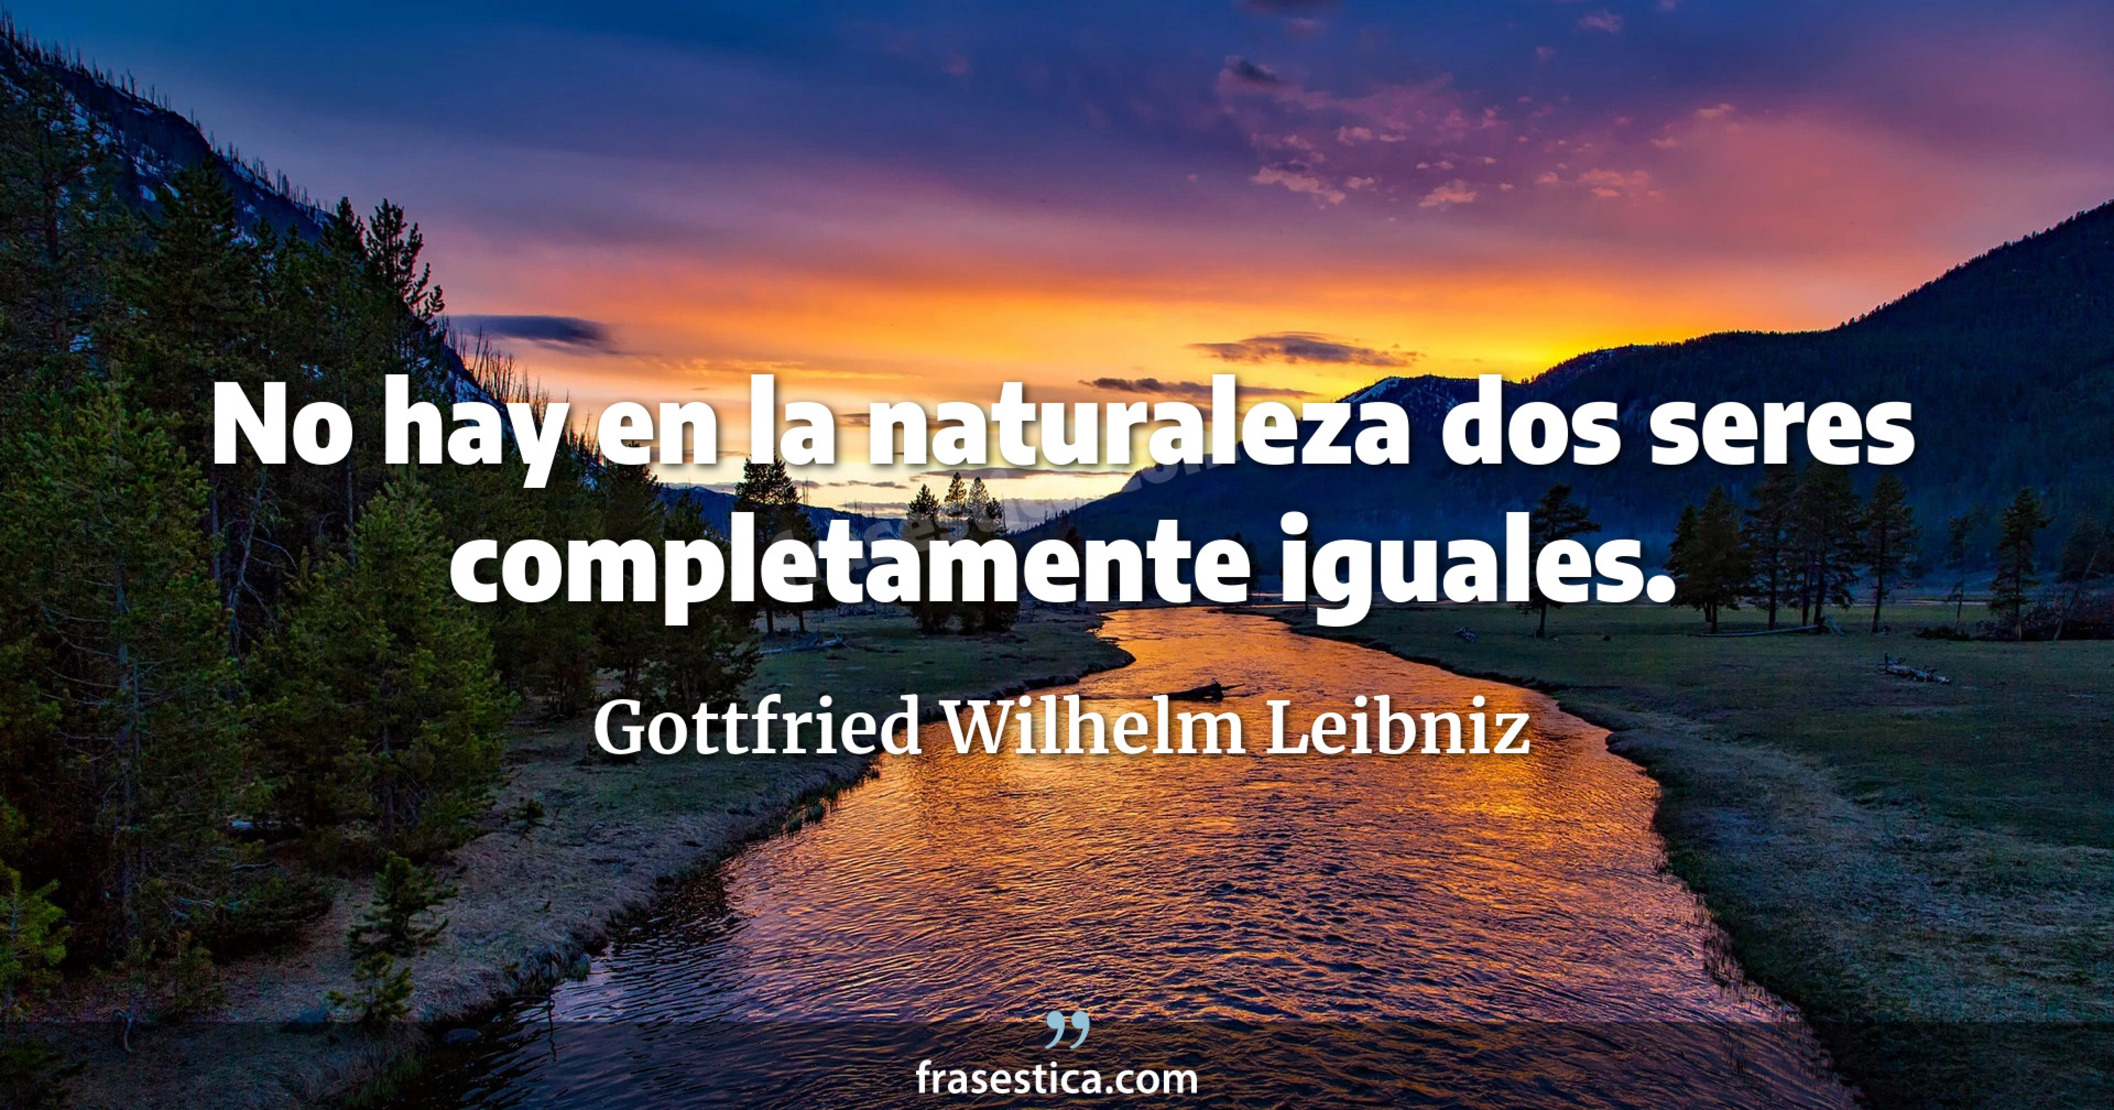 No hay en la naturaleza dos seres completamente iguales. - Gottfried Wilhelm Leibniz